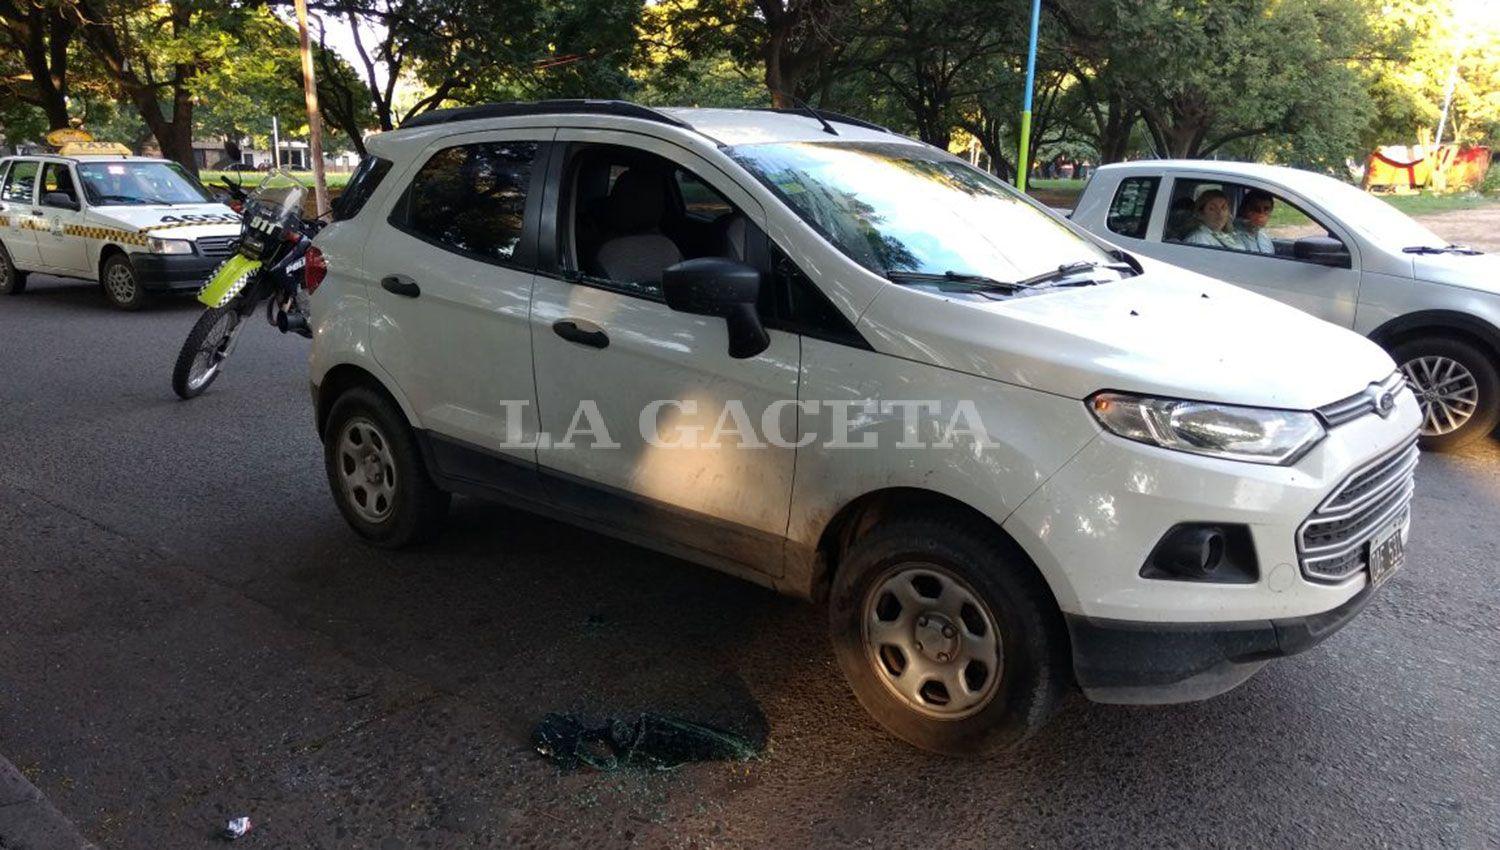 Los rompevidrios volvieron a atacar: le robaron a una docente que se dirigía al trabajo en Buenos Aires al 900